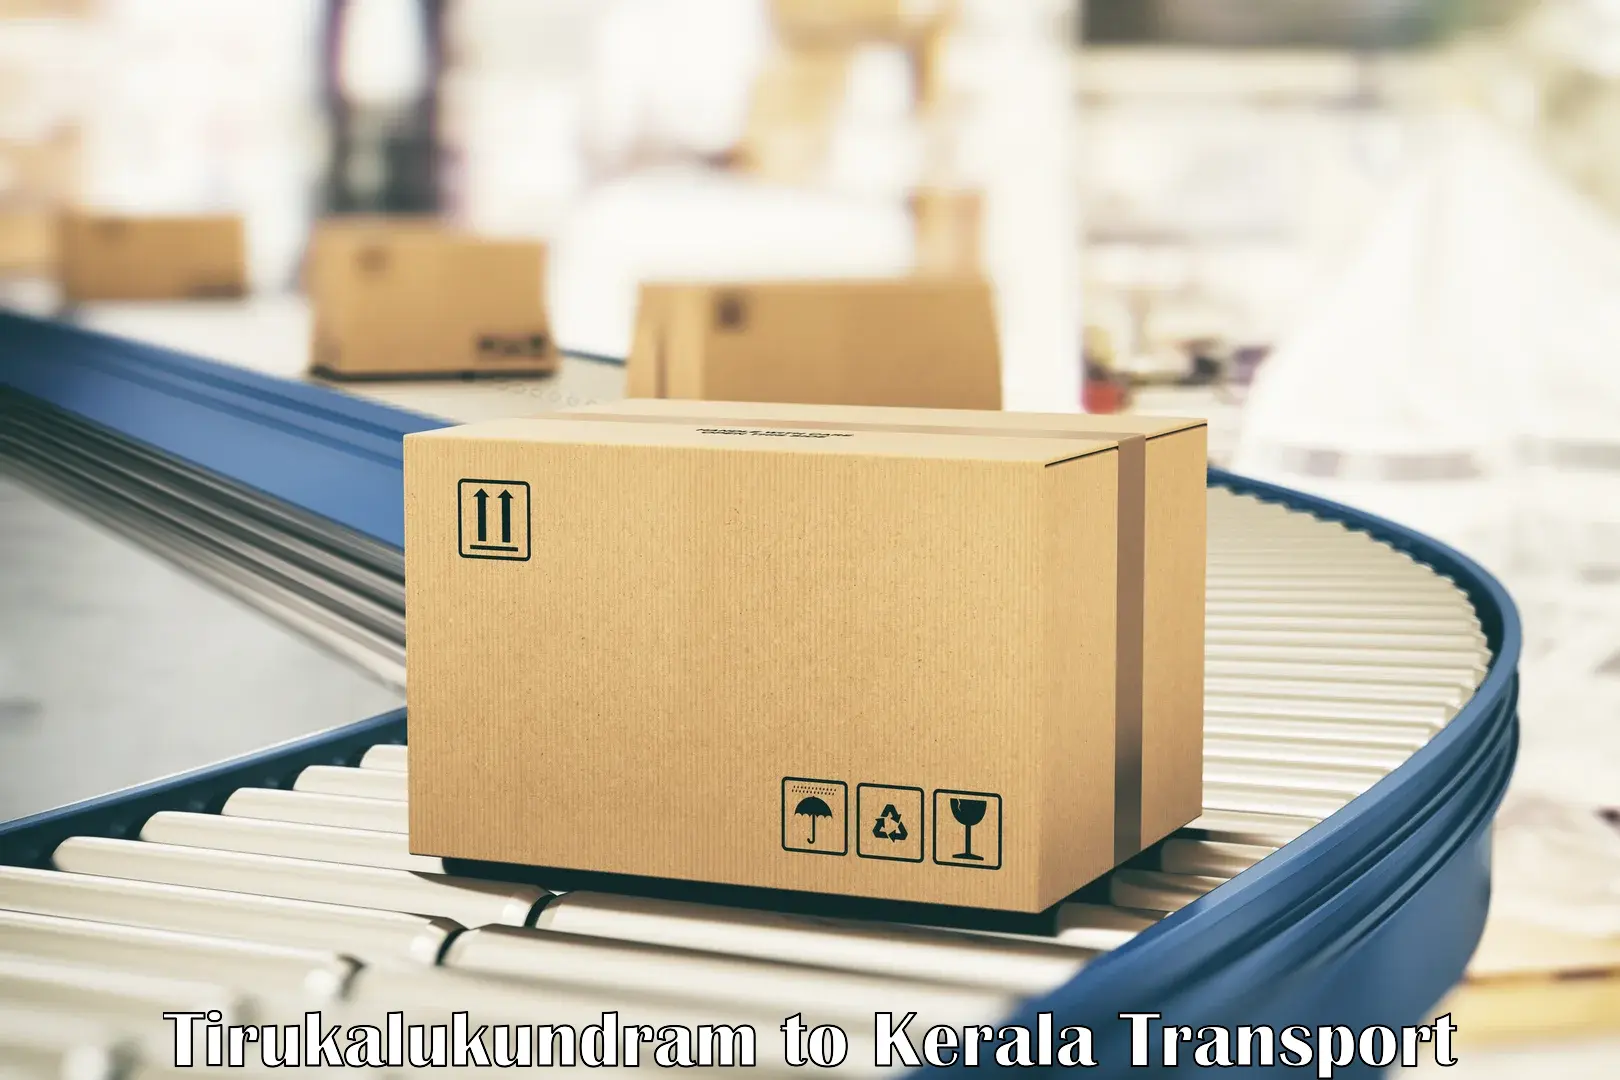 Cargo transportation services in Tirukalukundram to Pathanamthitta